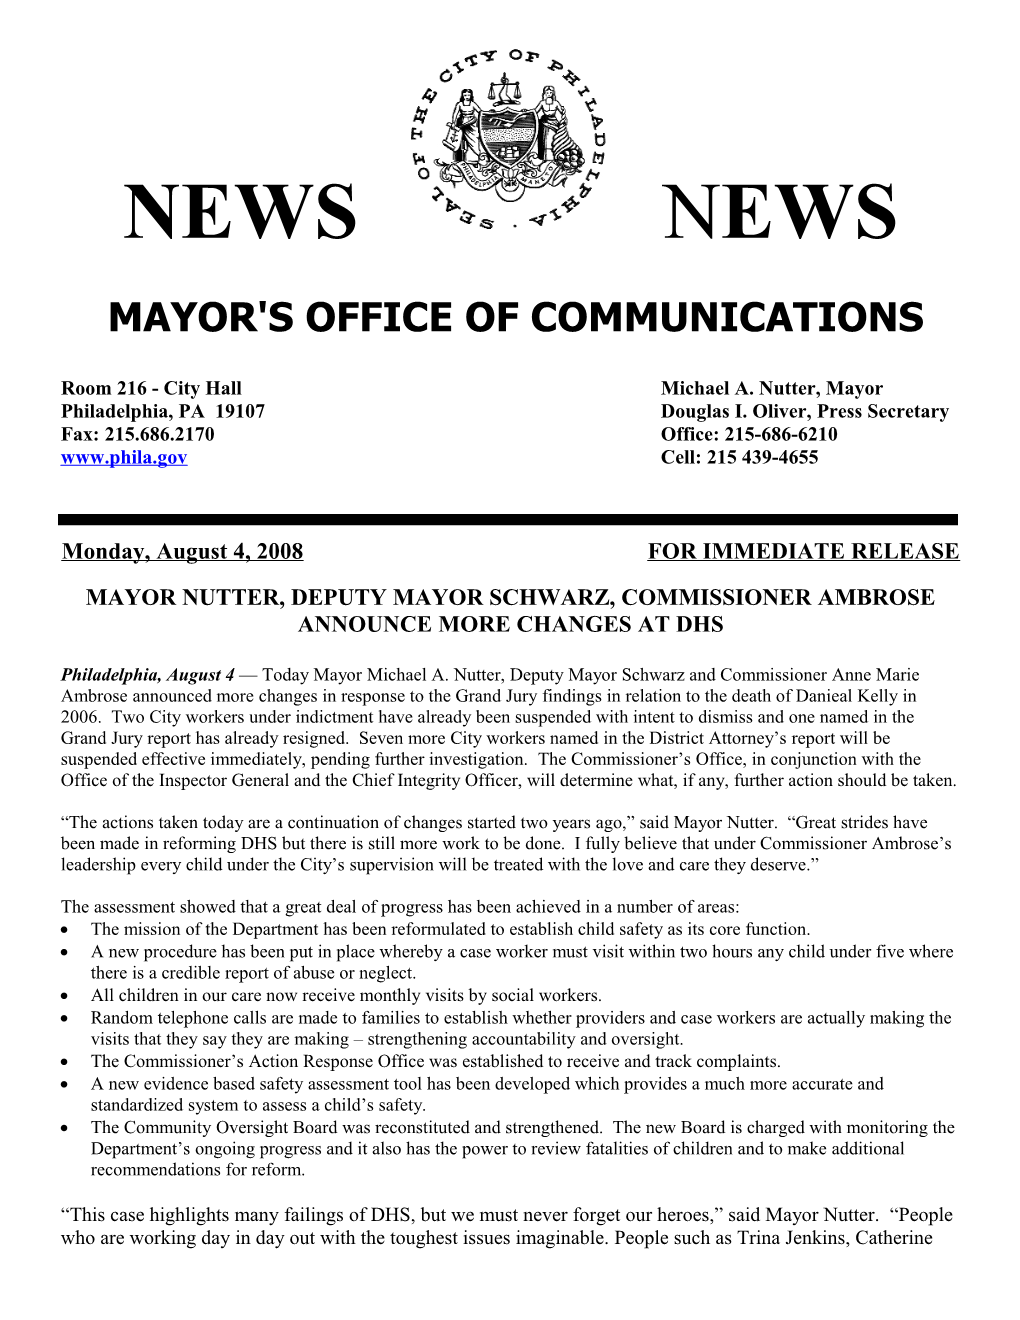 Mayor Nutter, Deputy Mayor Schwarz, Commissioner Ambrose Announce More Changes at Dhs